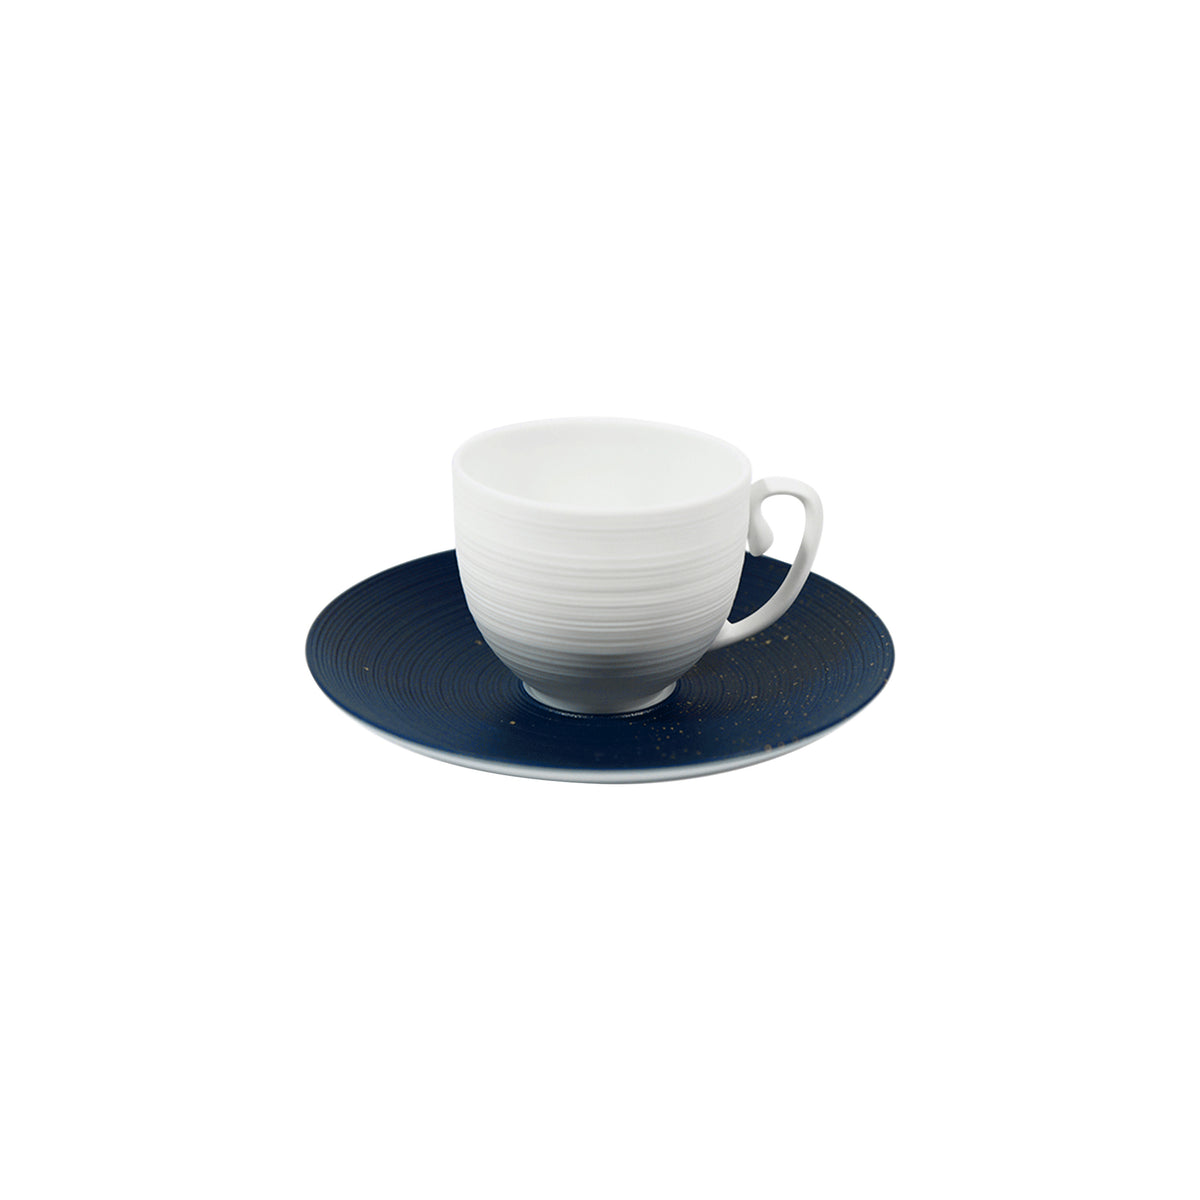 Lutèce by Achille Salvagni - Coffee set (cup & saucer)